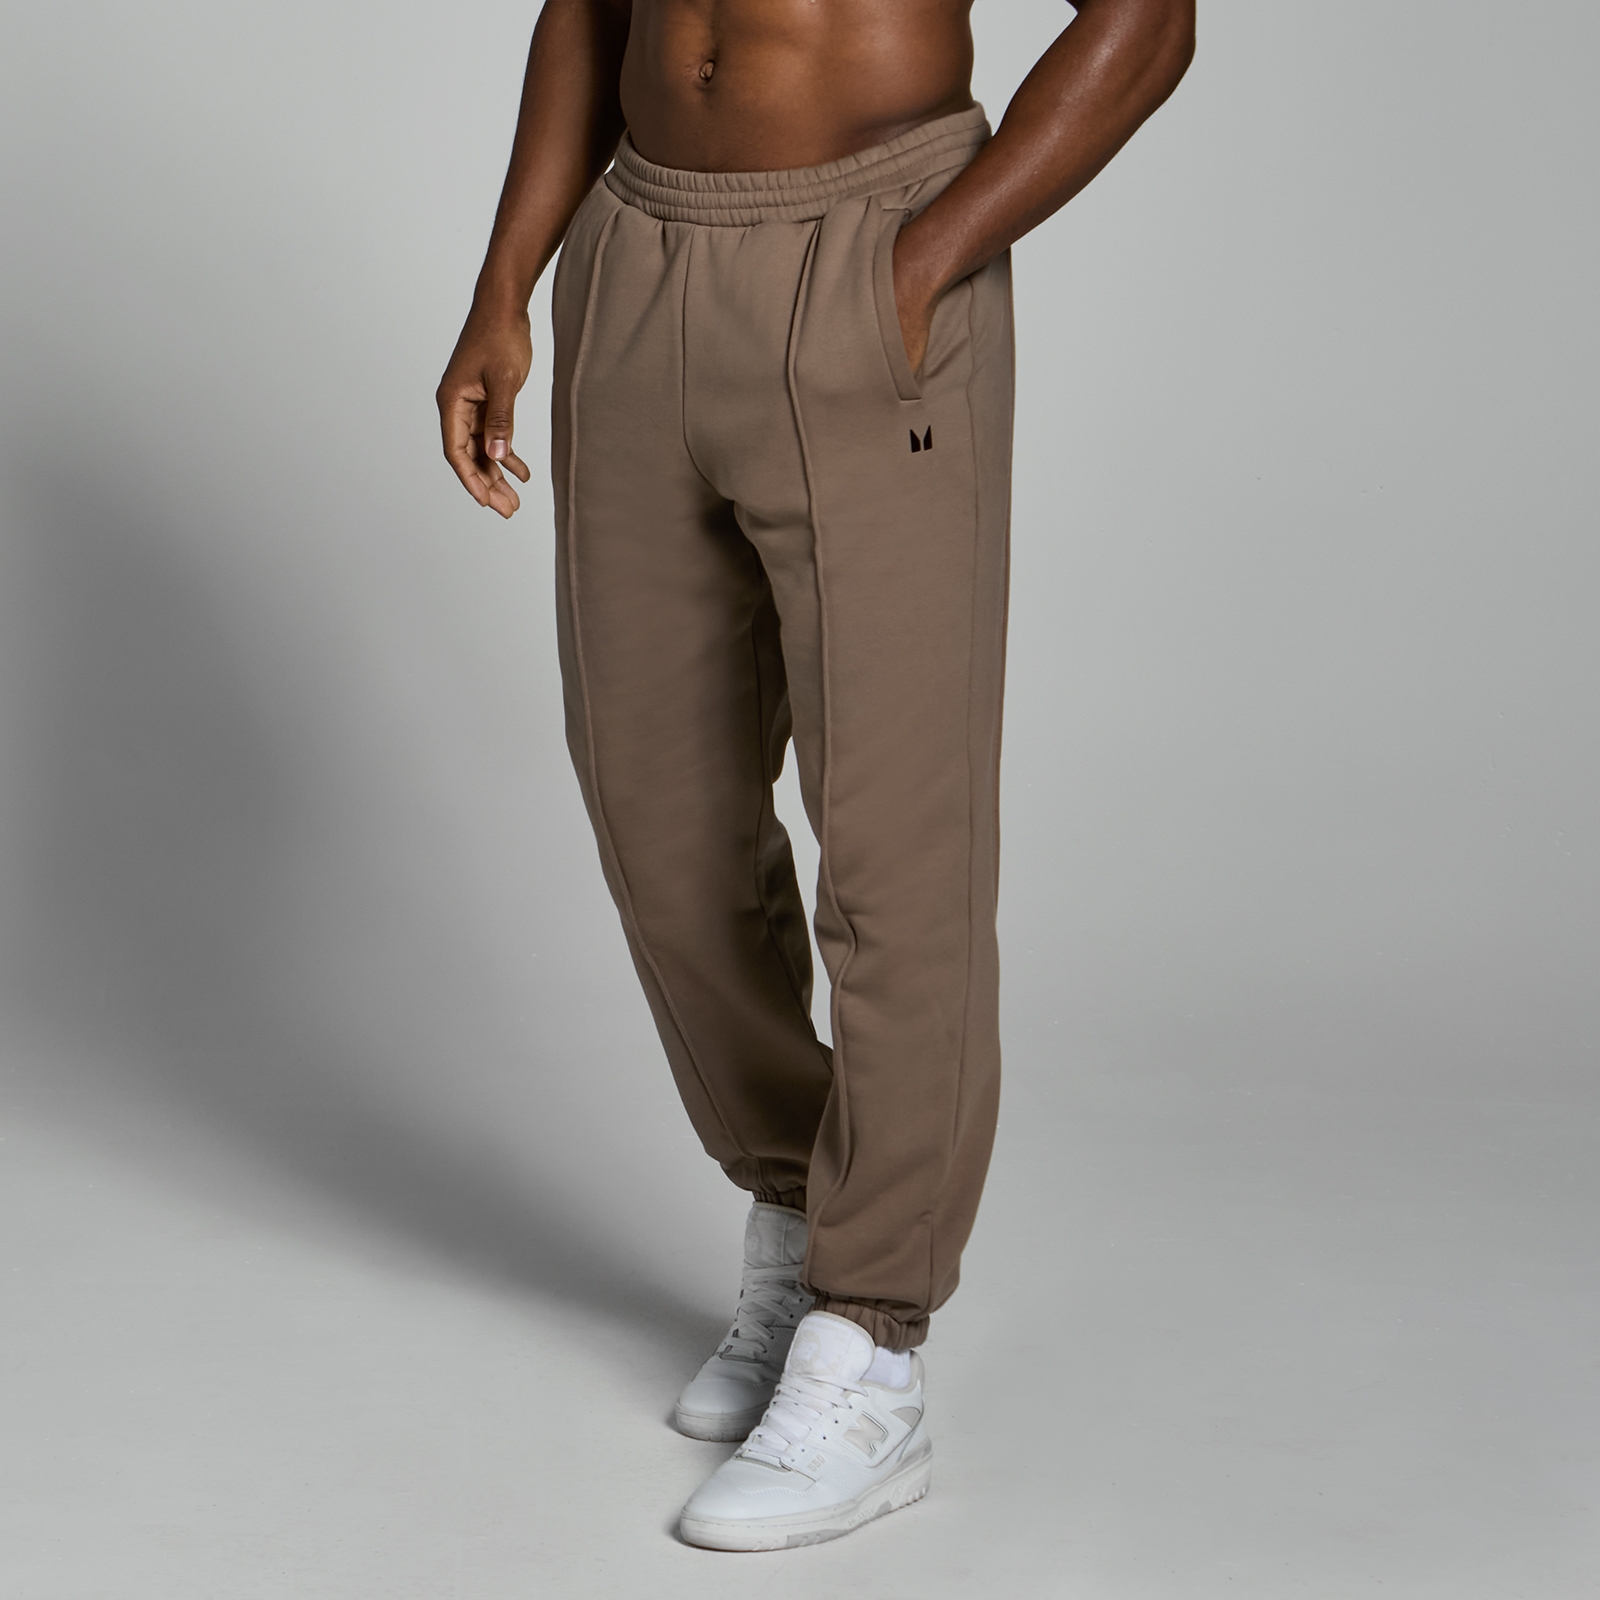 Image of Pantaloni da jogging pesanti oversize MP Lifestyle da uomo - Marrone chiaro - XS